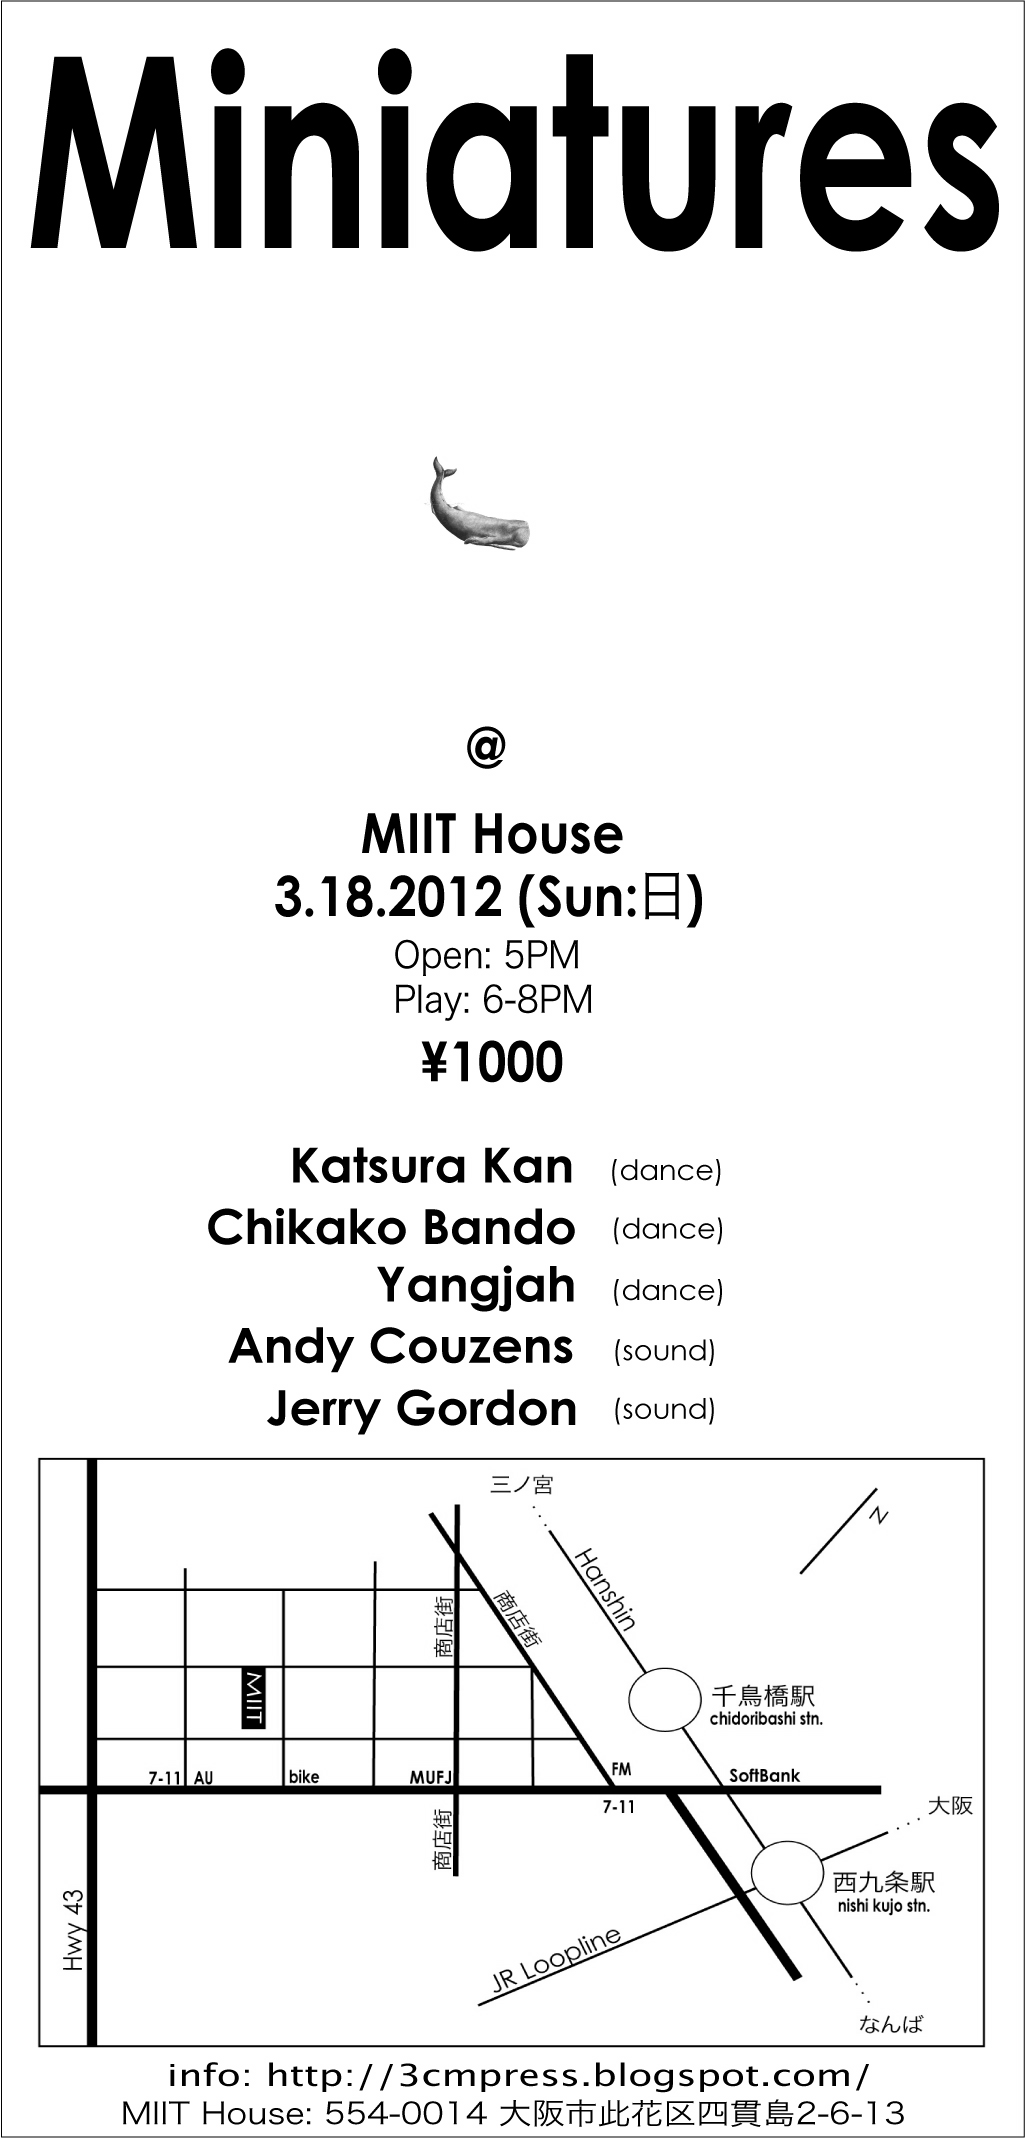 2012/03/18 Miniature@MIIT House, 大阪 Osaka_c0211549_21395689.jpg